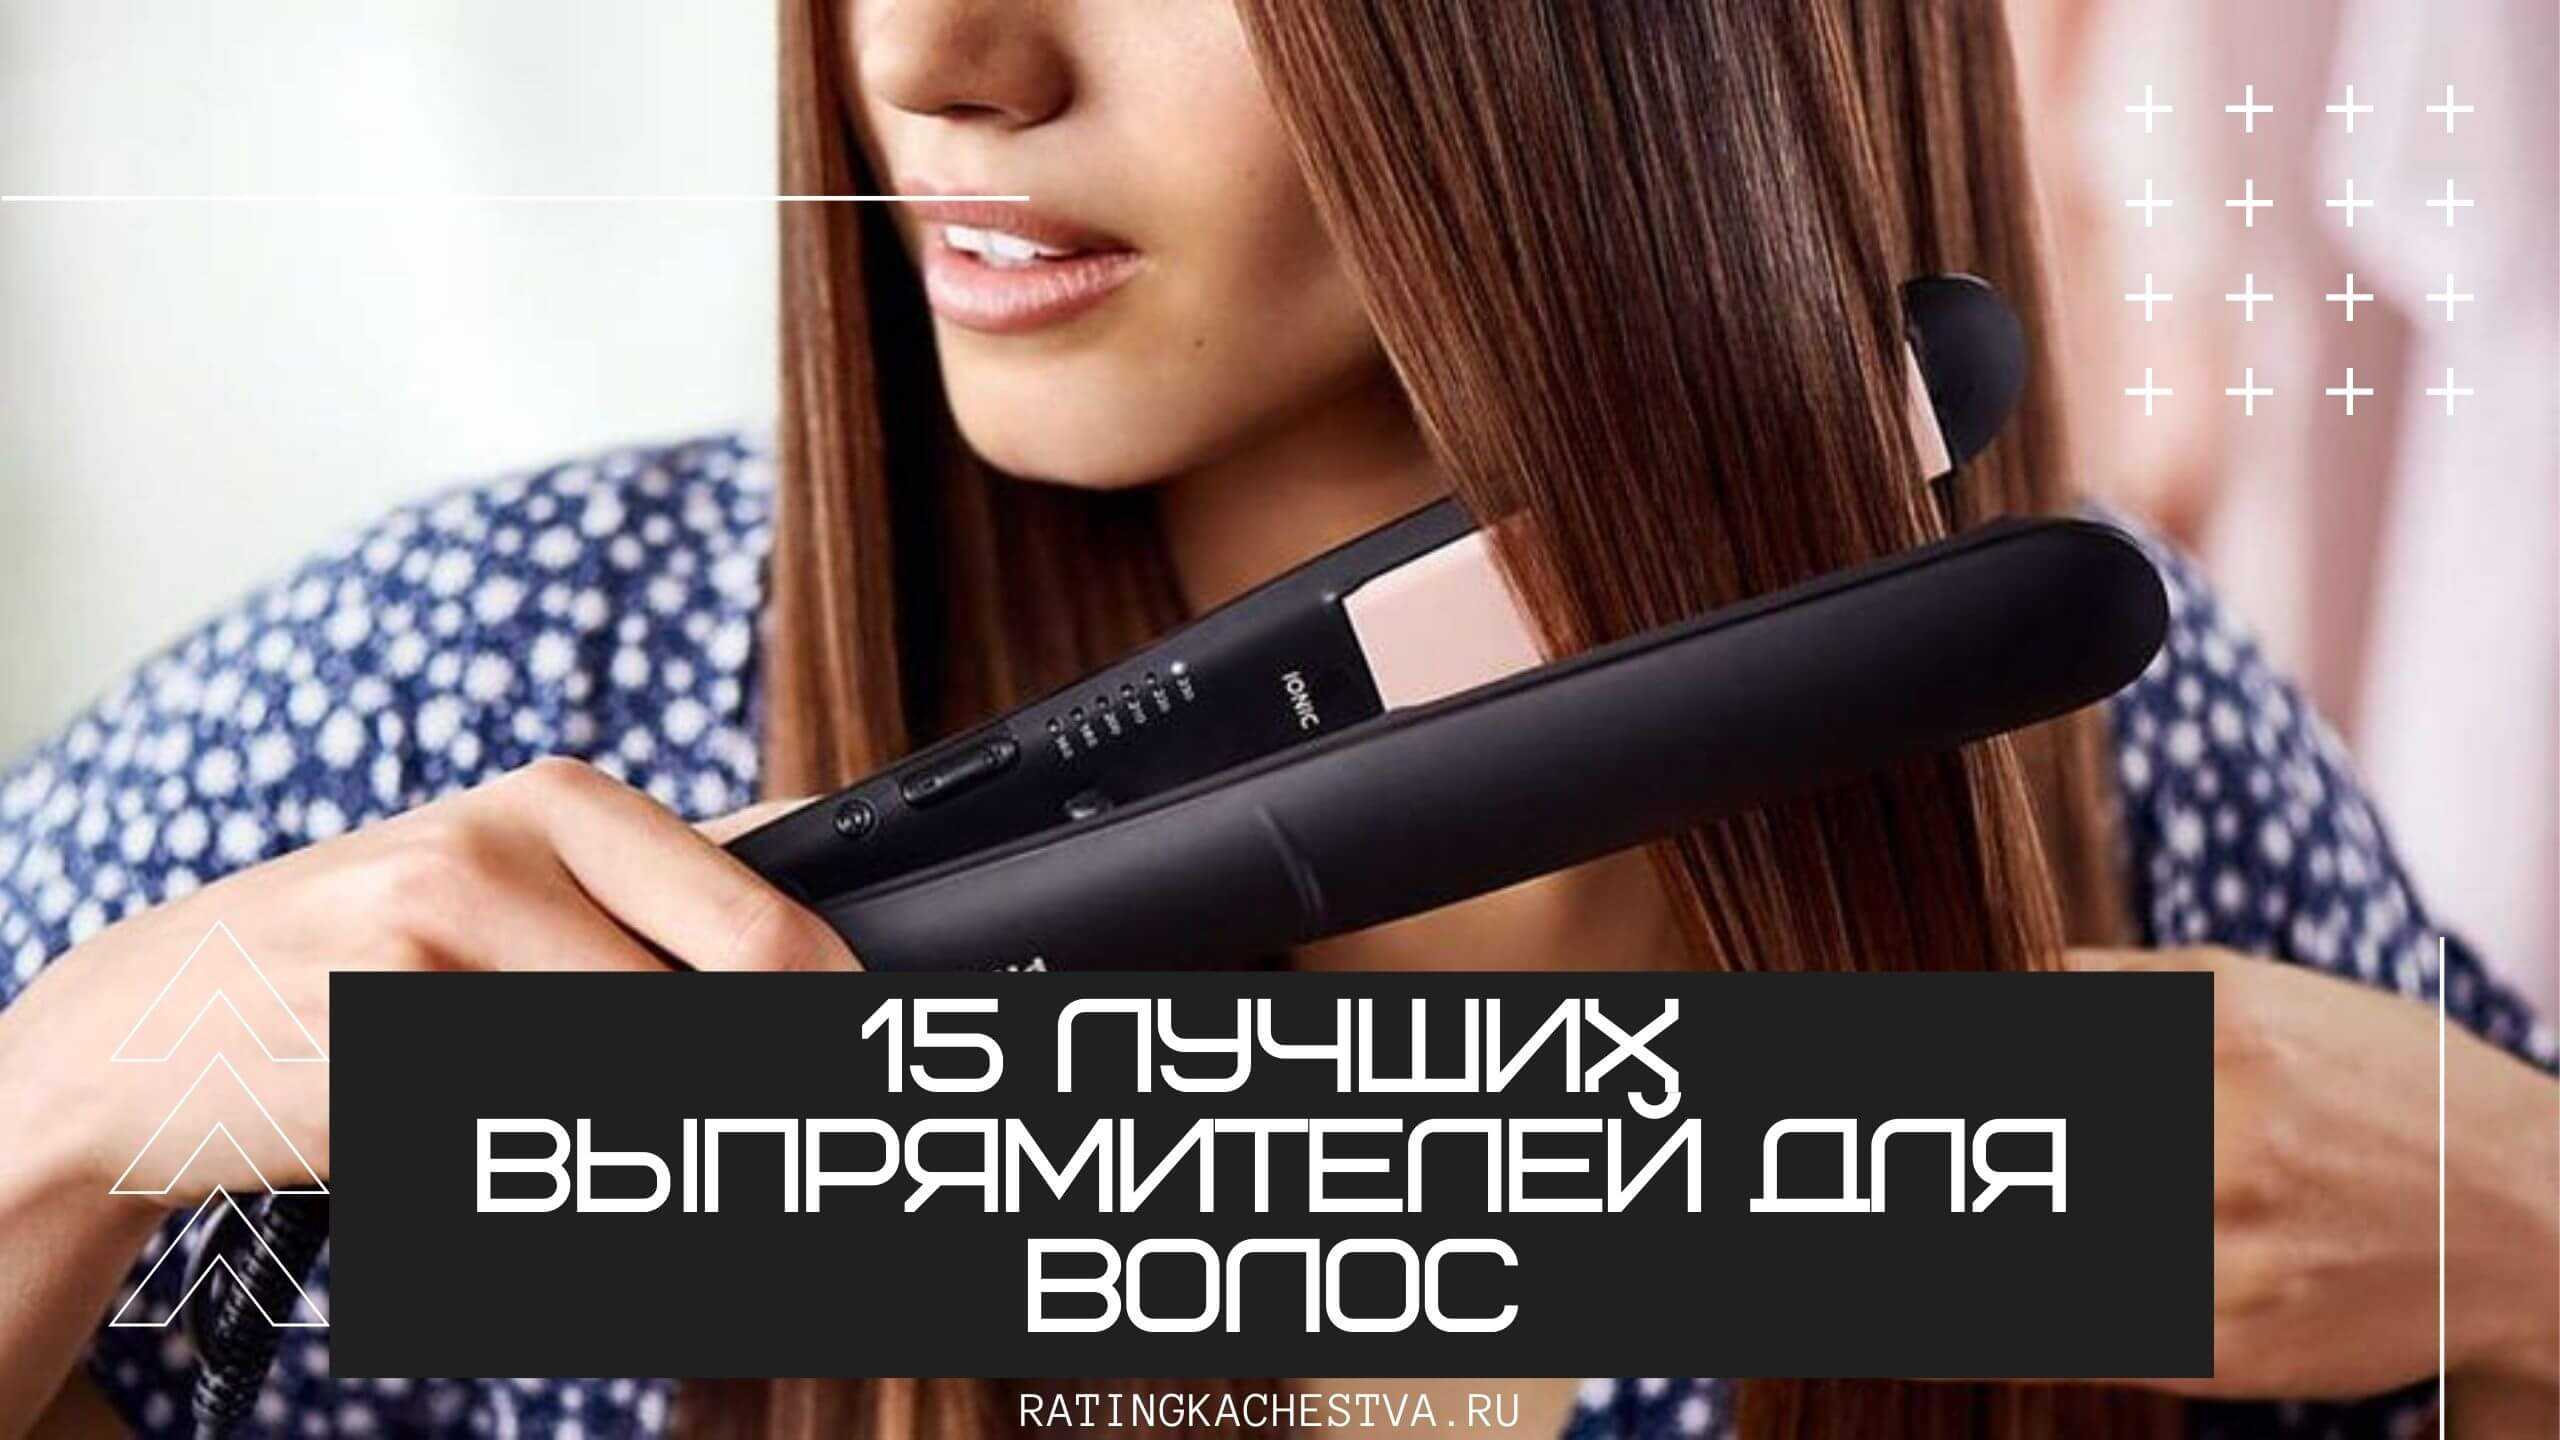 Утюжки для волос: рейтинг лучших, характеристики, отзывы производителей - luv.ru